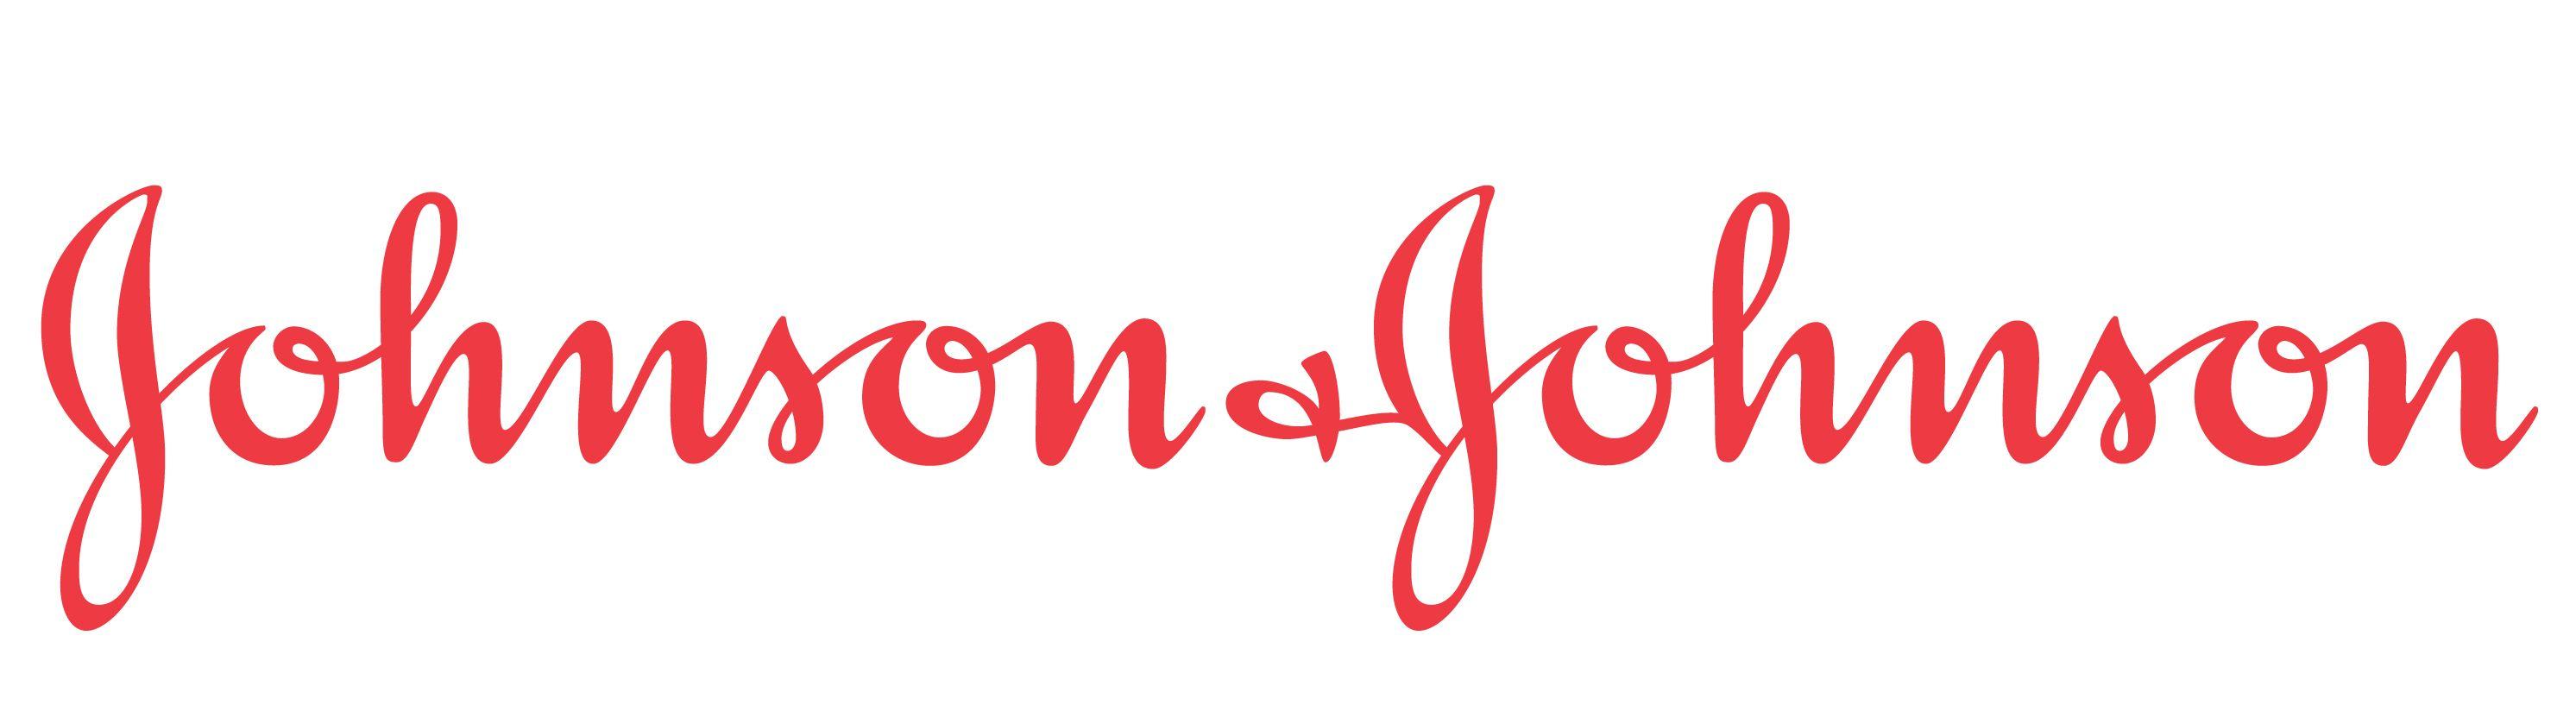 J&J Logo - Johnson & Johnson. $JNJ Stock. Shares Soar As Profit & Revenue